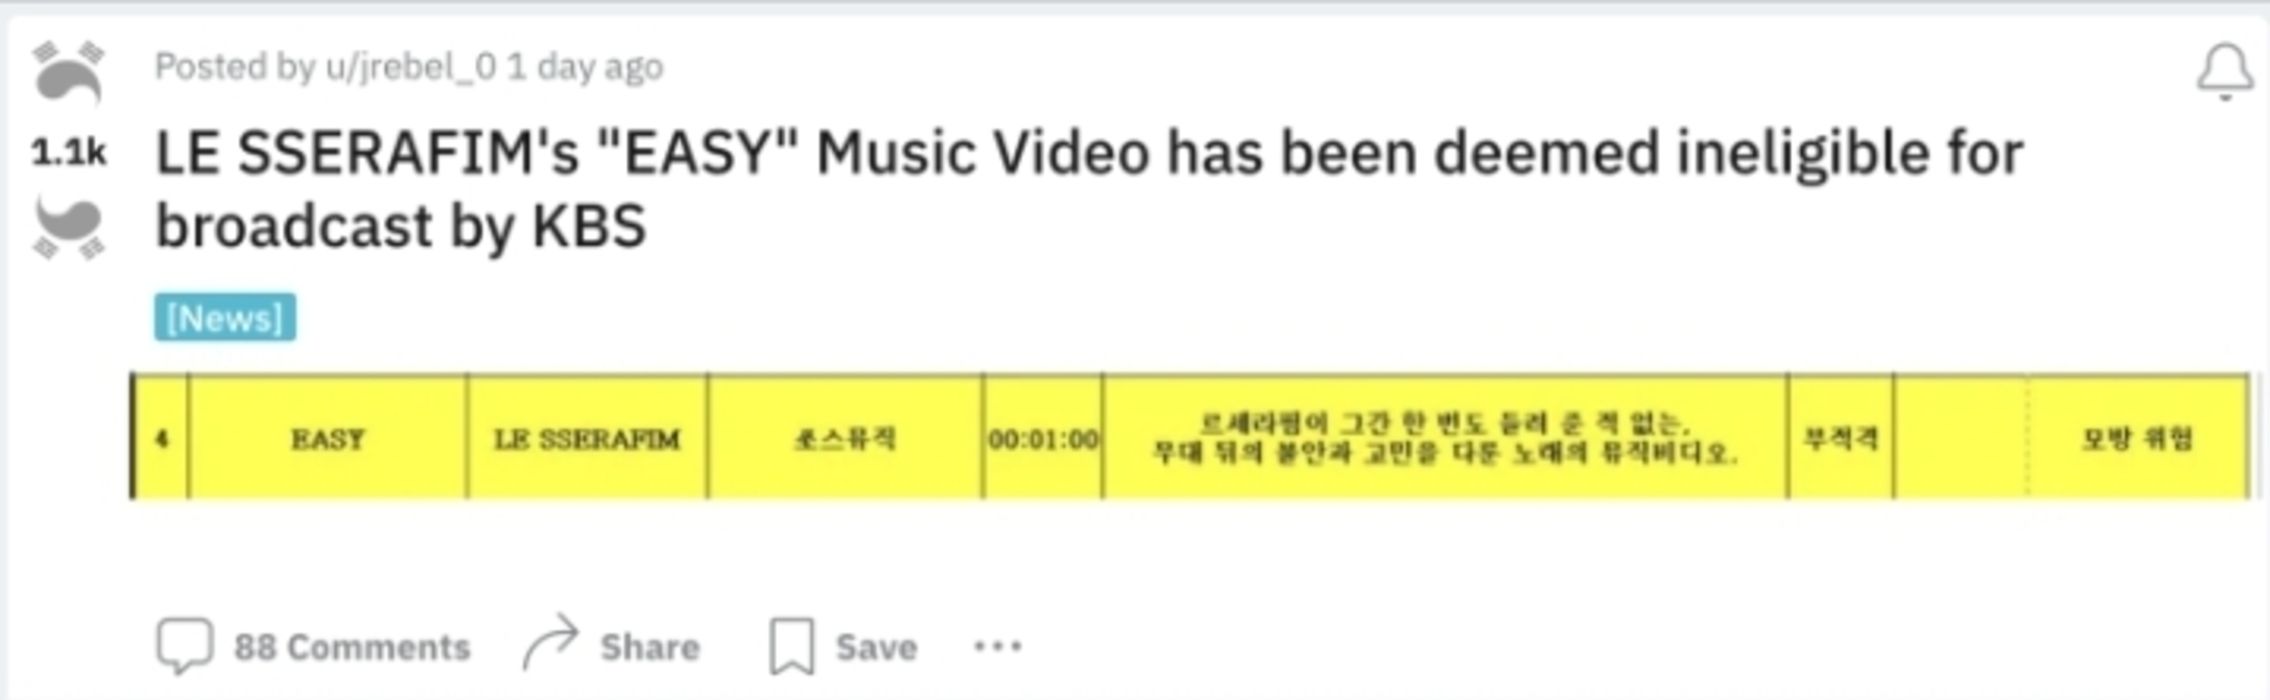 KBS Nilai Musik Video LE SSERAFIM 'EASY' Tidak Layak Tayang, Diduga Ada Indikasi Peniruan